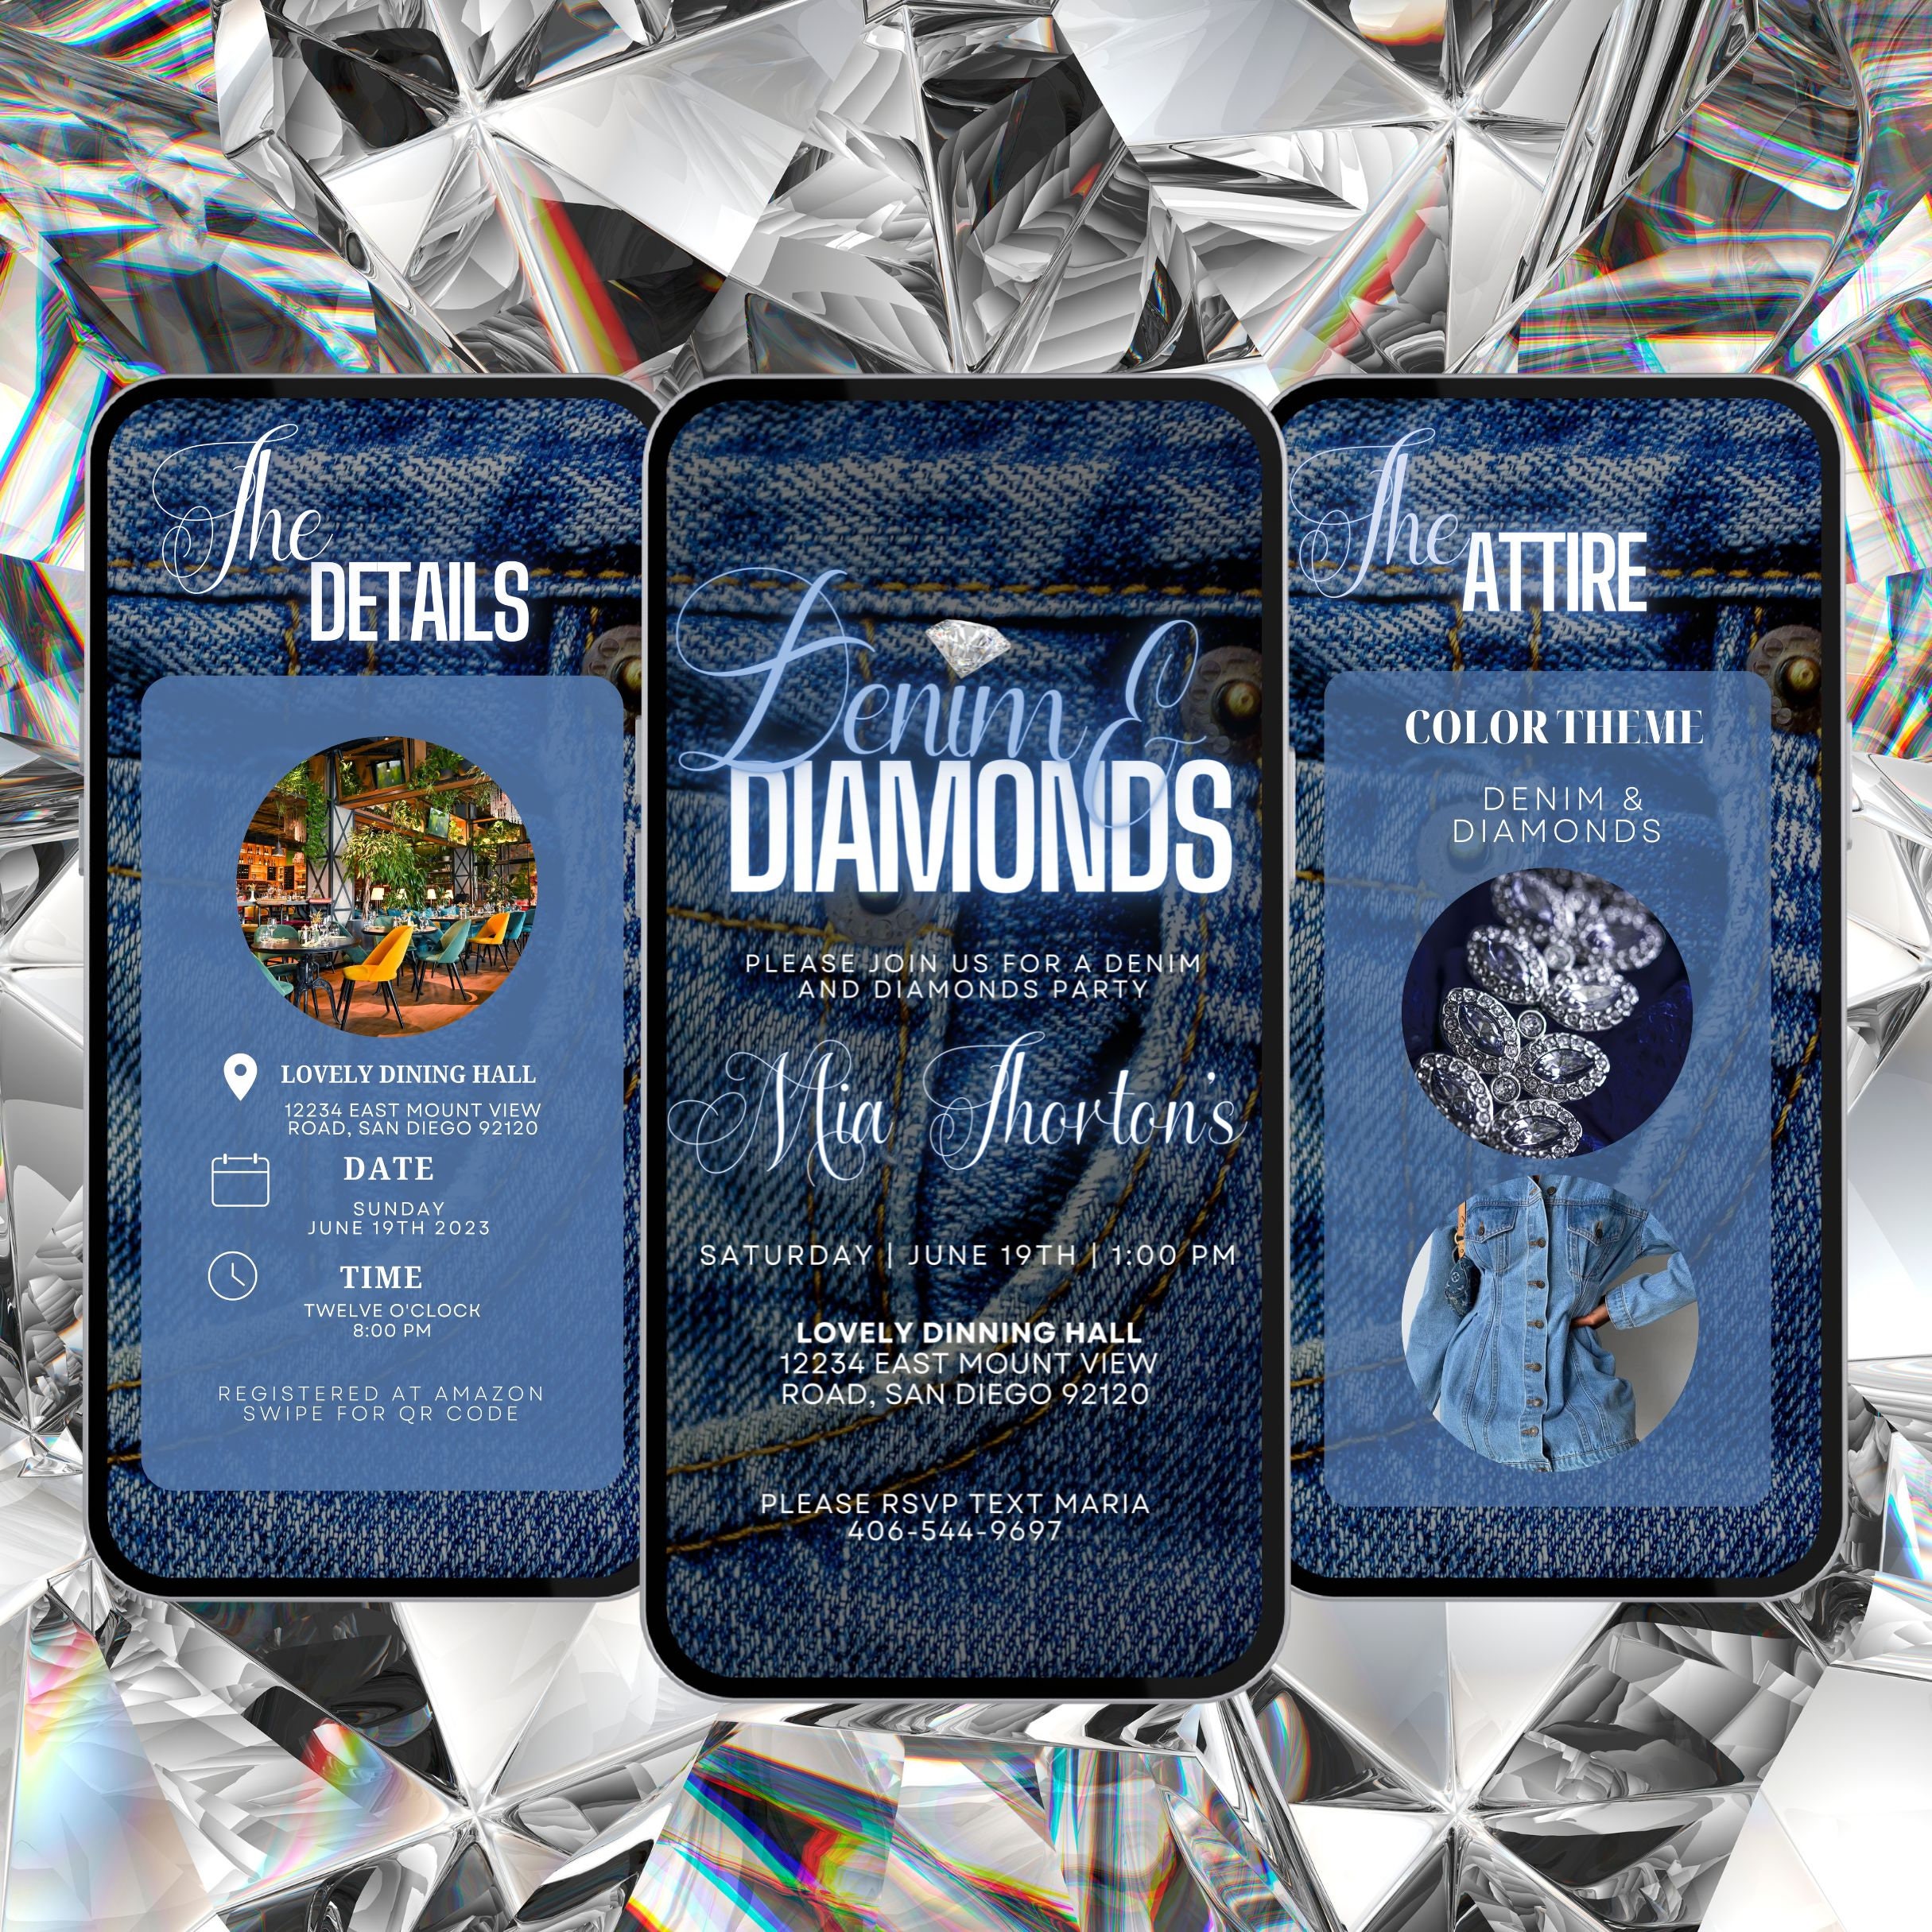 Sparkling night planned for Denim & Diamonds fundraiser – The Livingston  Post.com